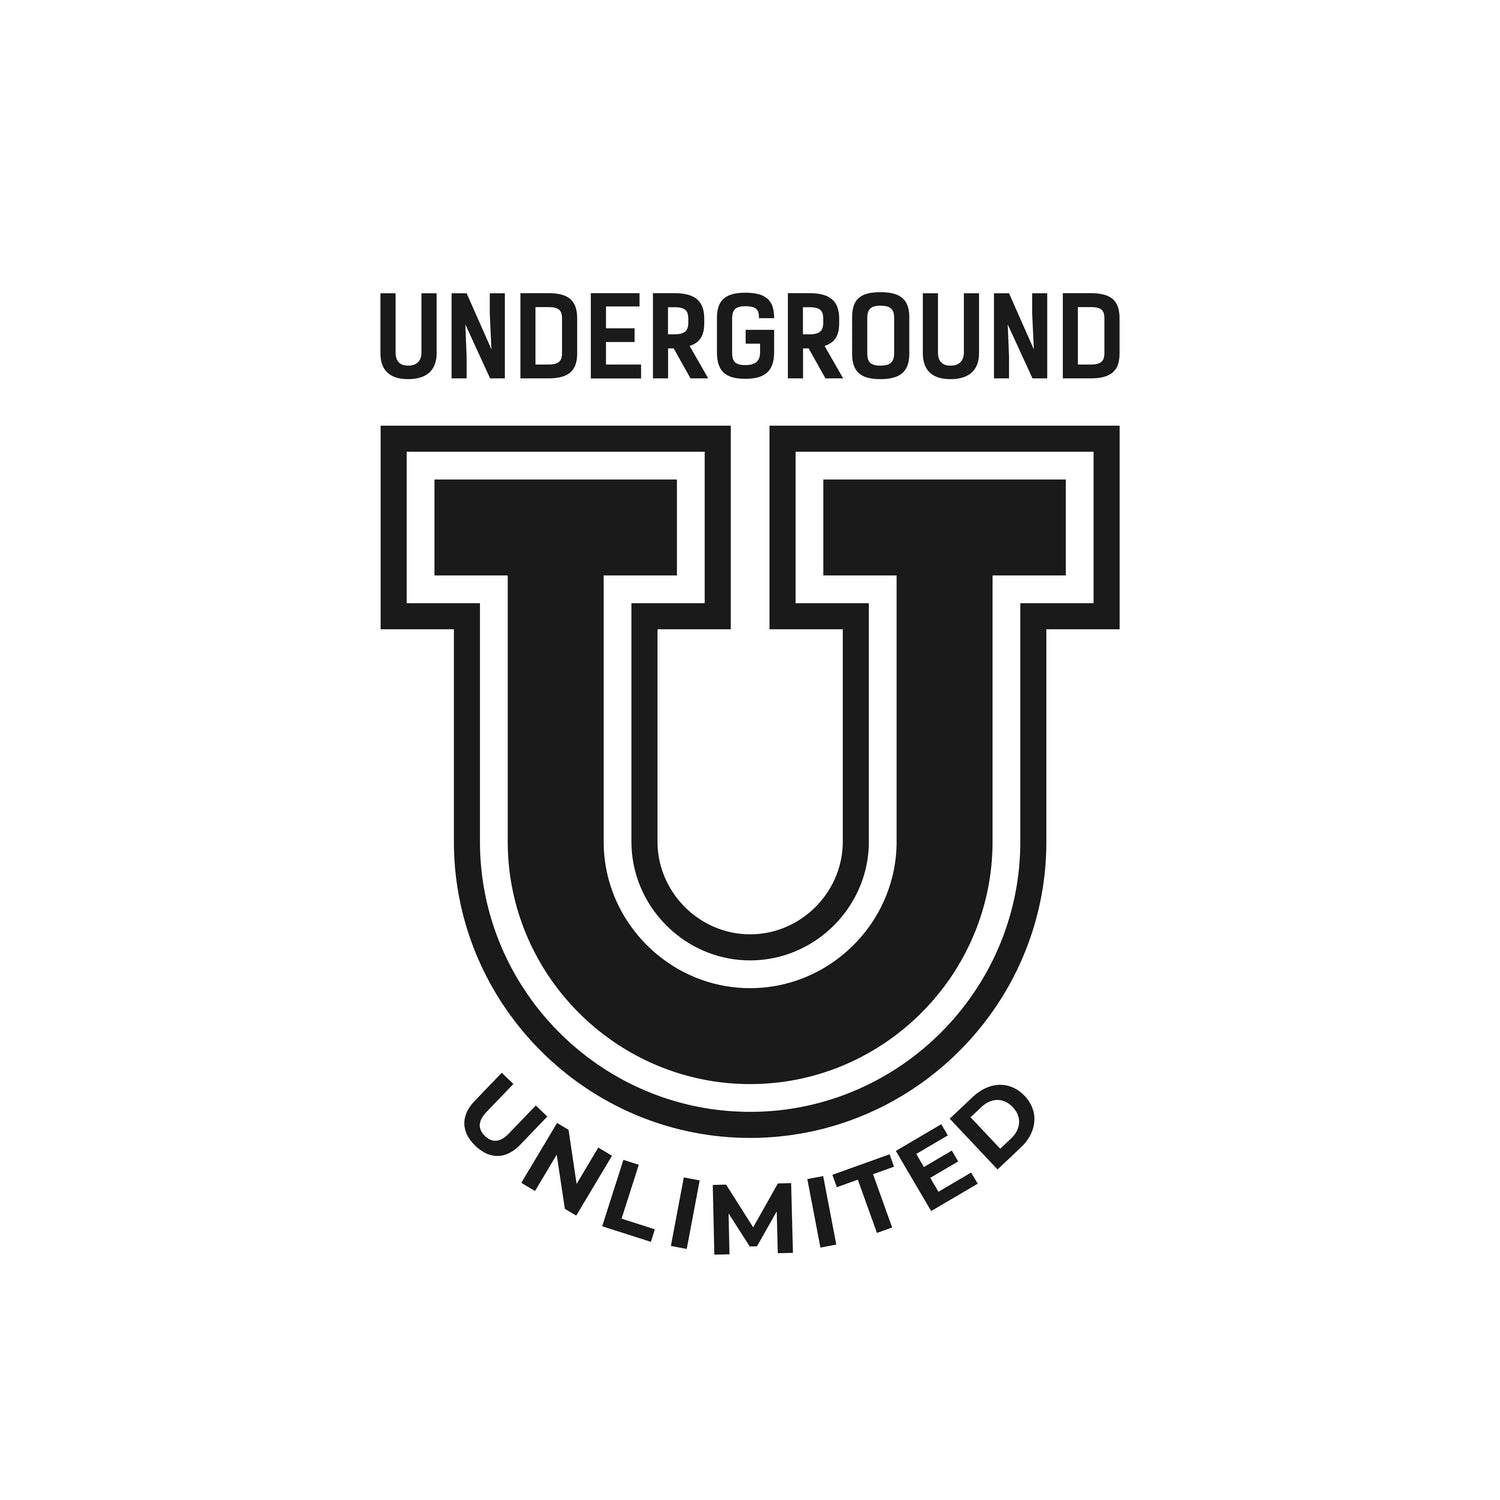 Underground Unlimited Retail Wear